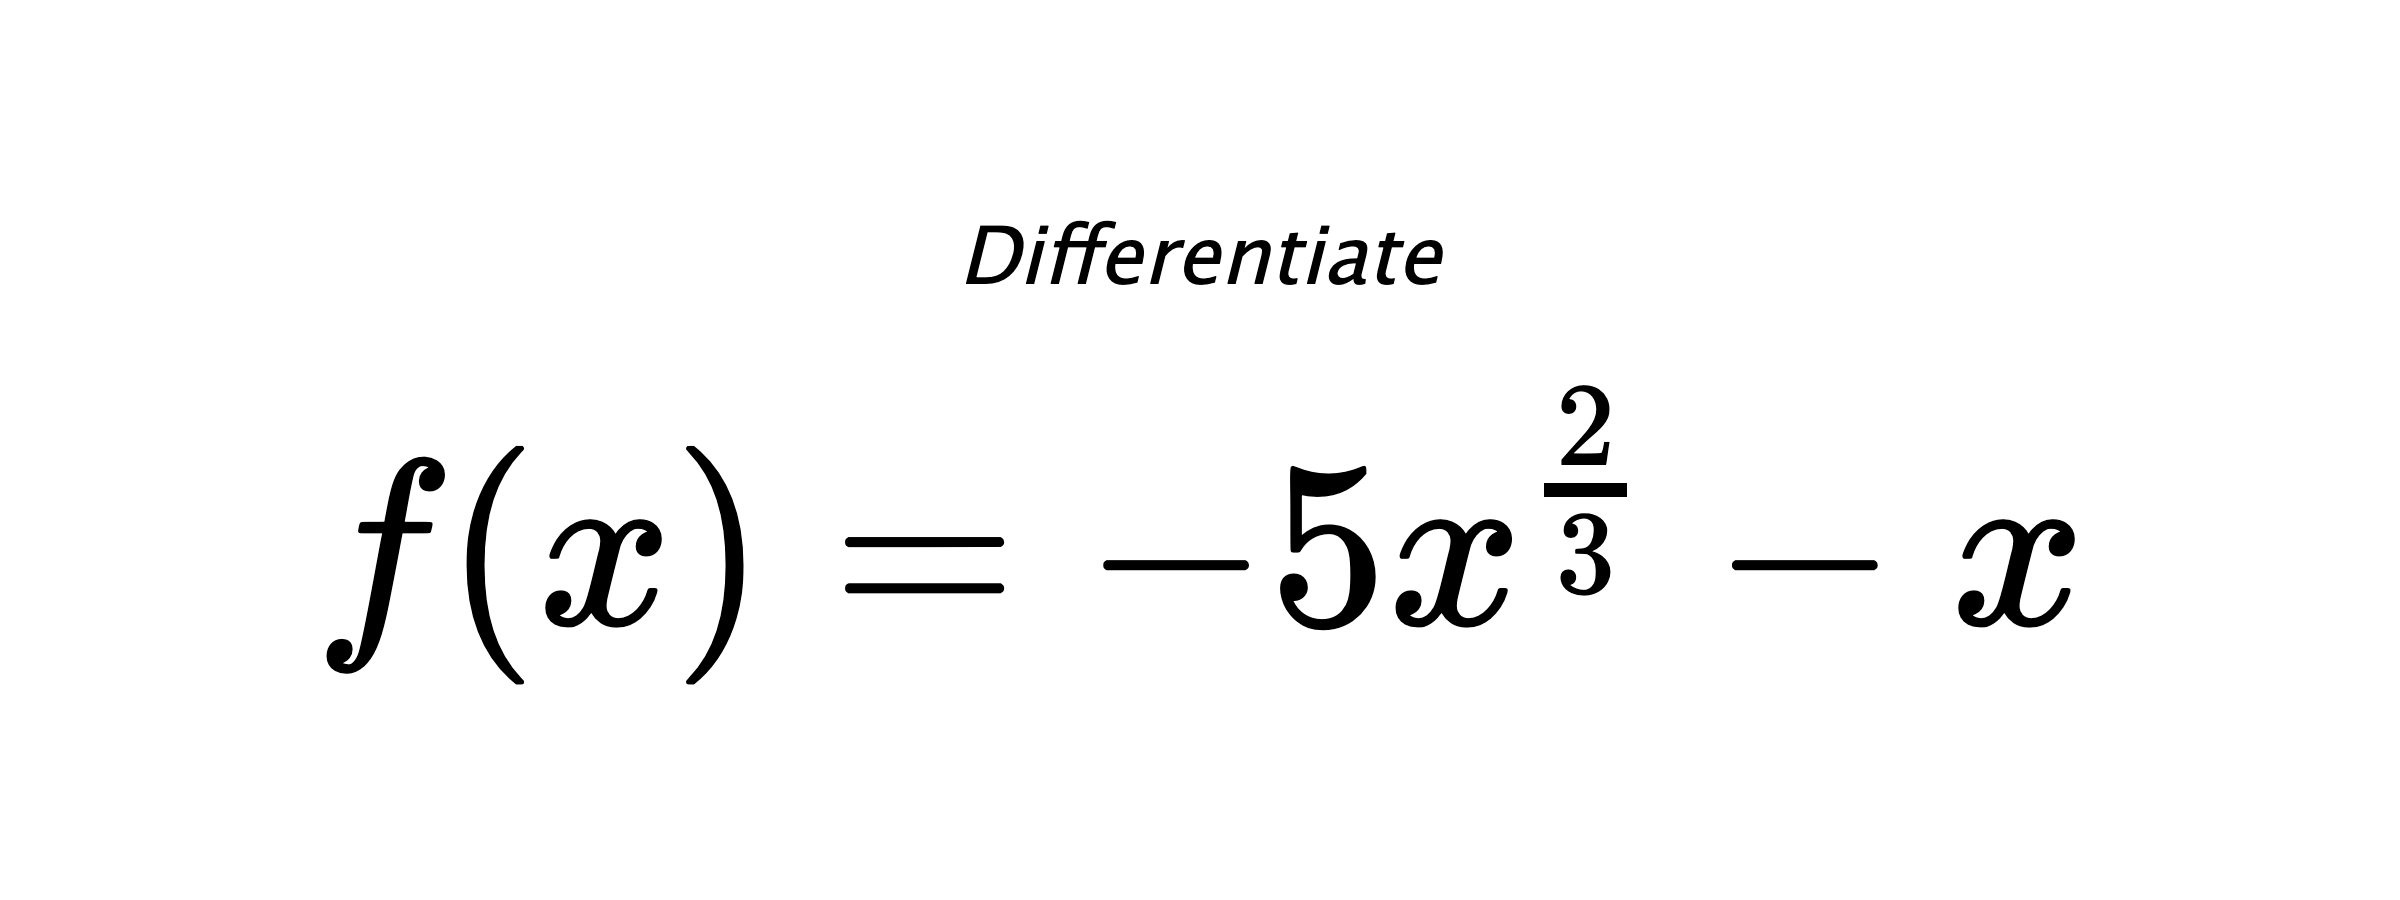 Differentiate $ f(x) = - 5 x^{\frac{2}{3}} - x $